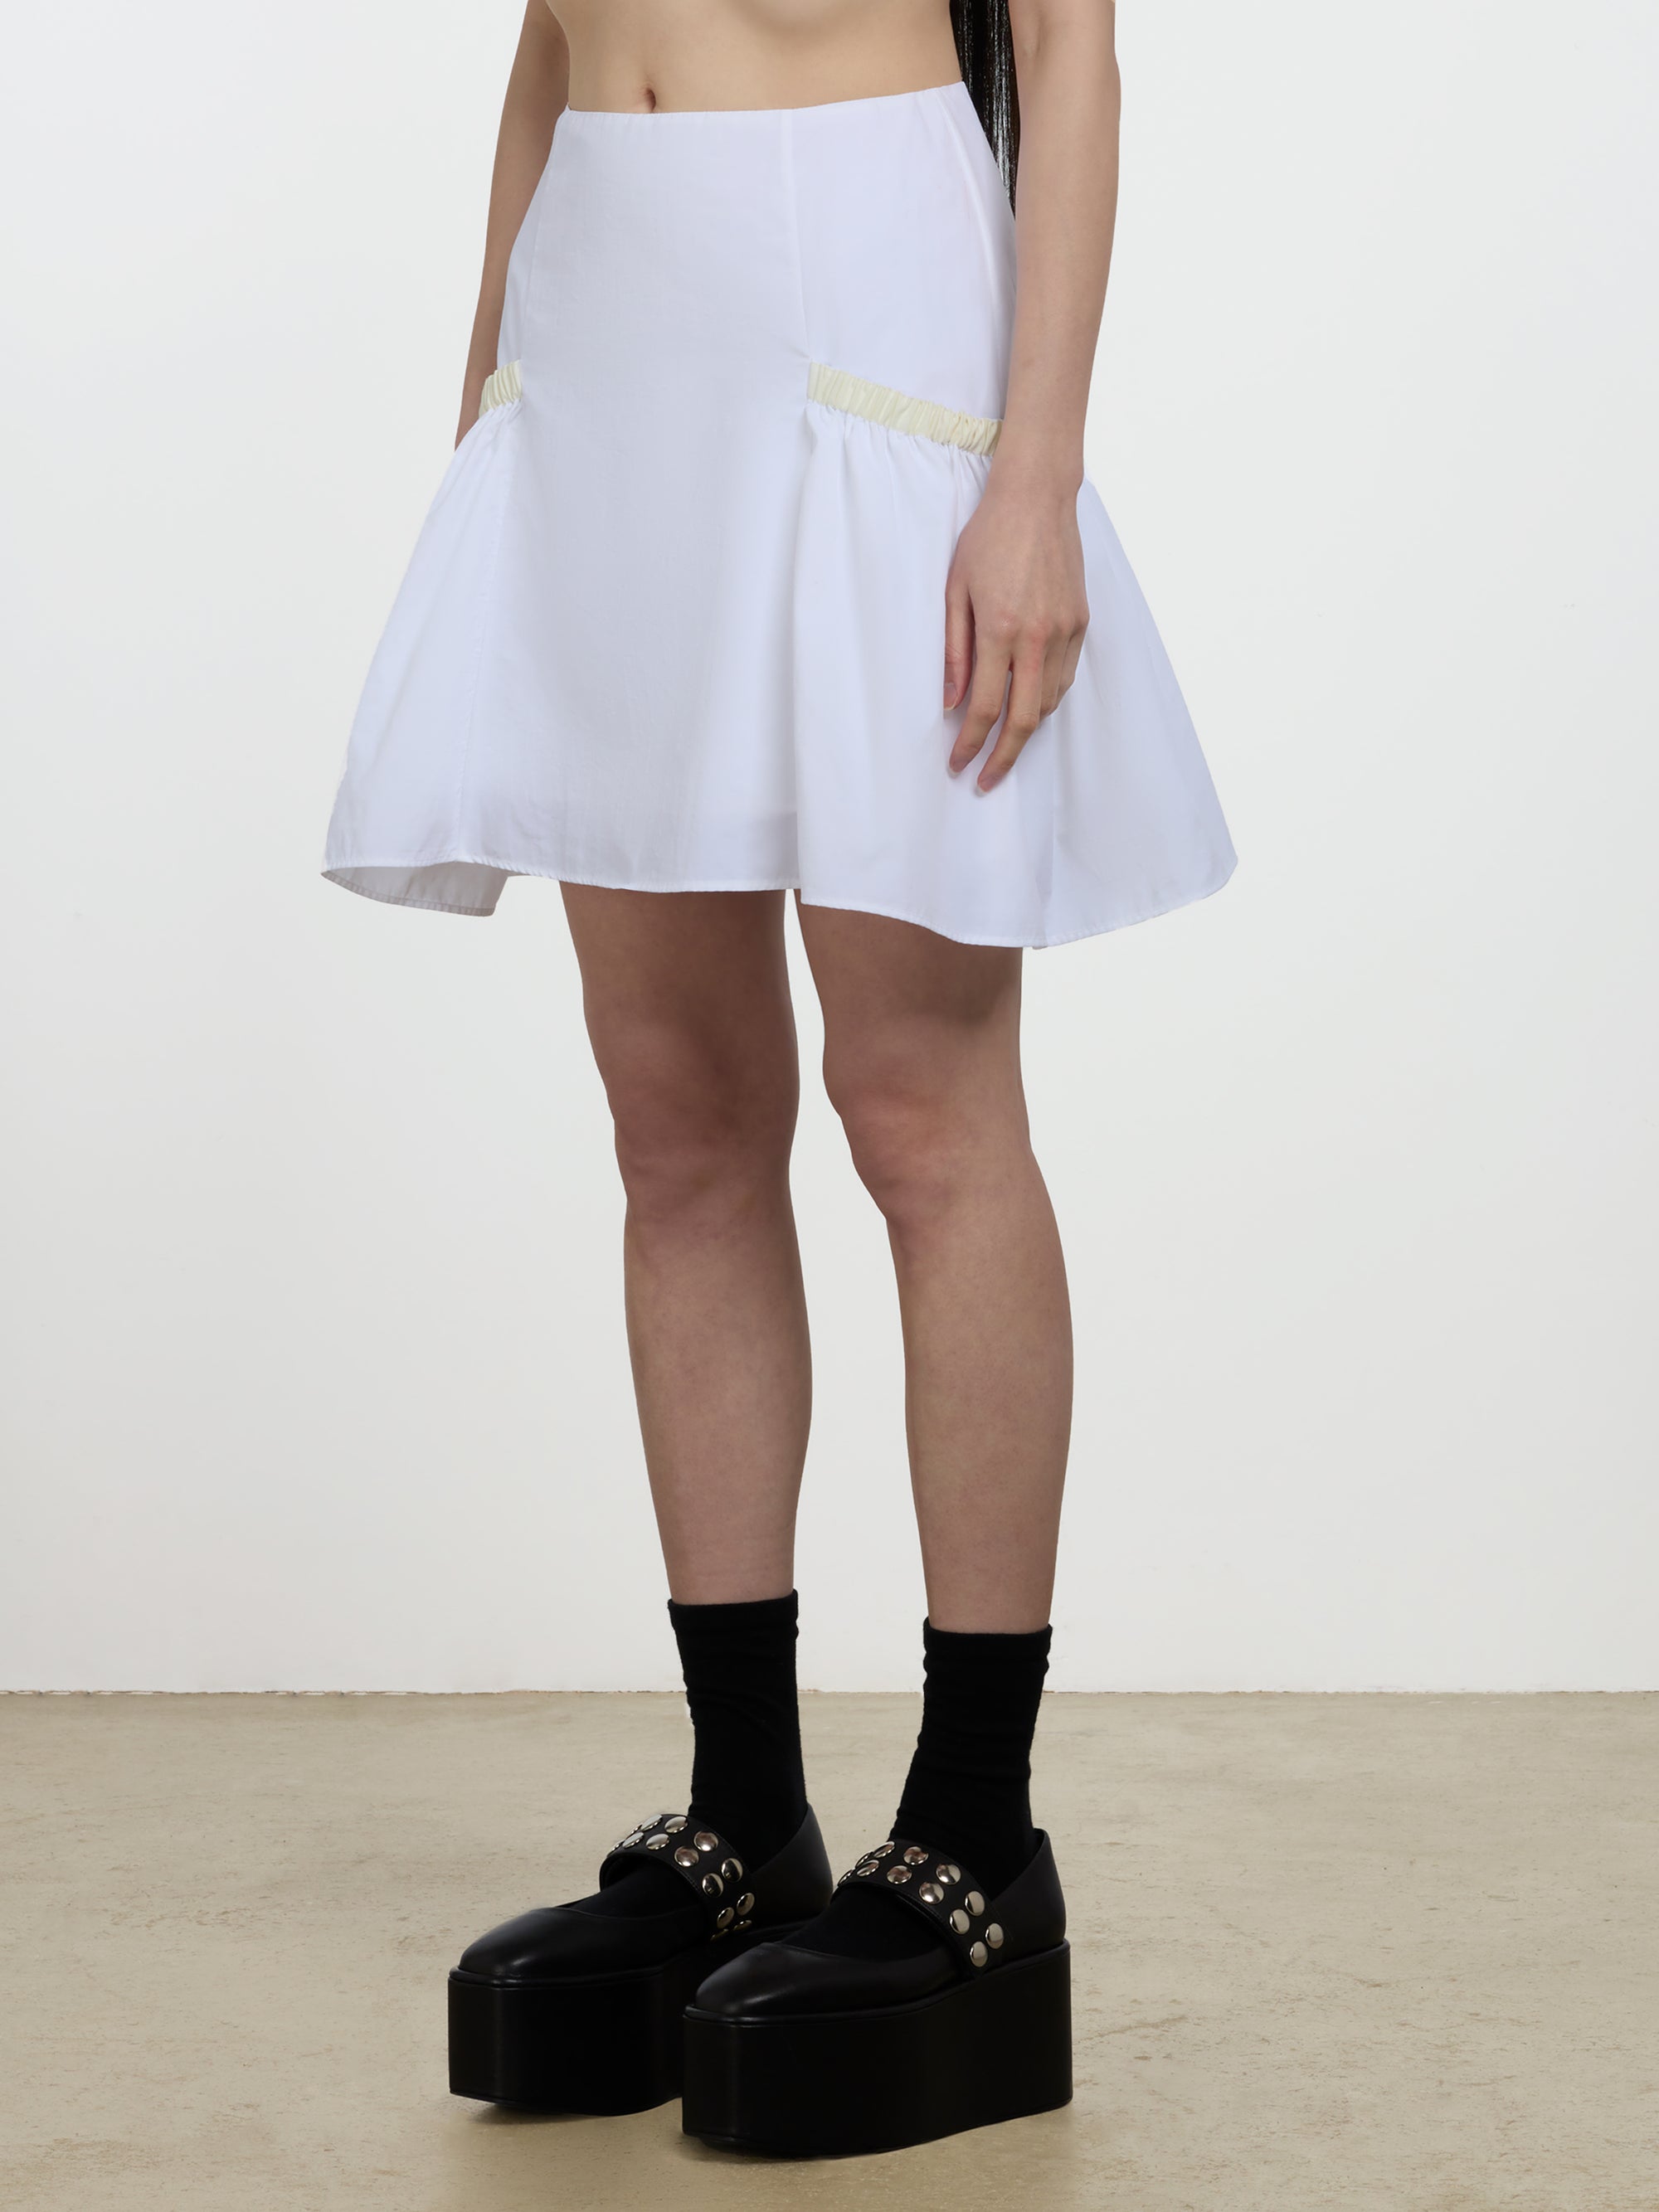 Molly Goddard - Kasha Mini Skirt - (White/Cream) view 2